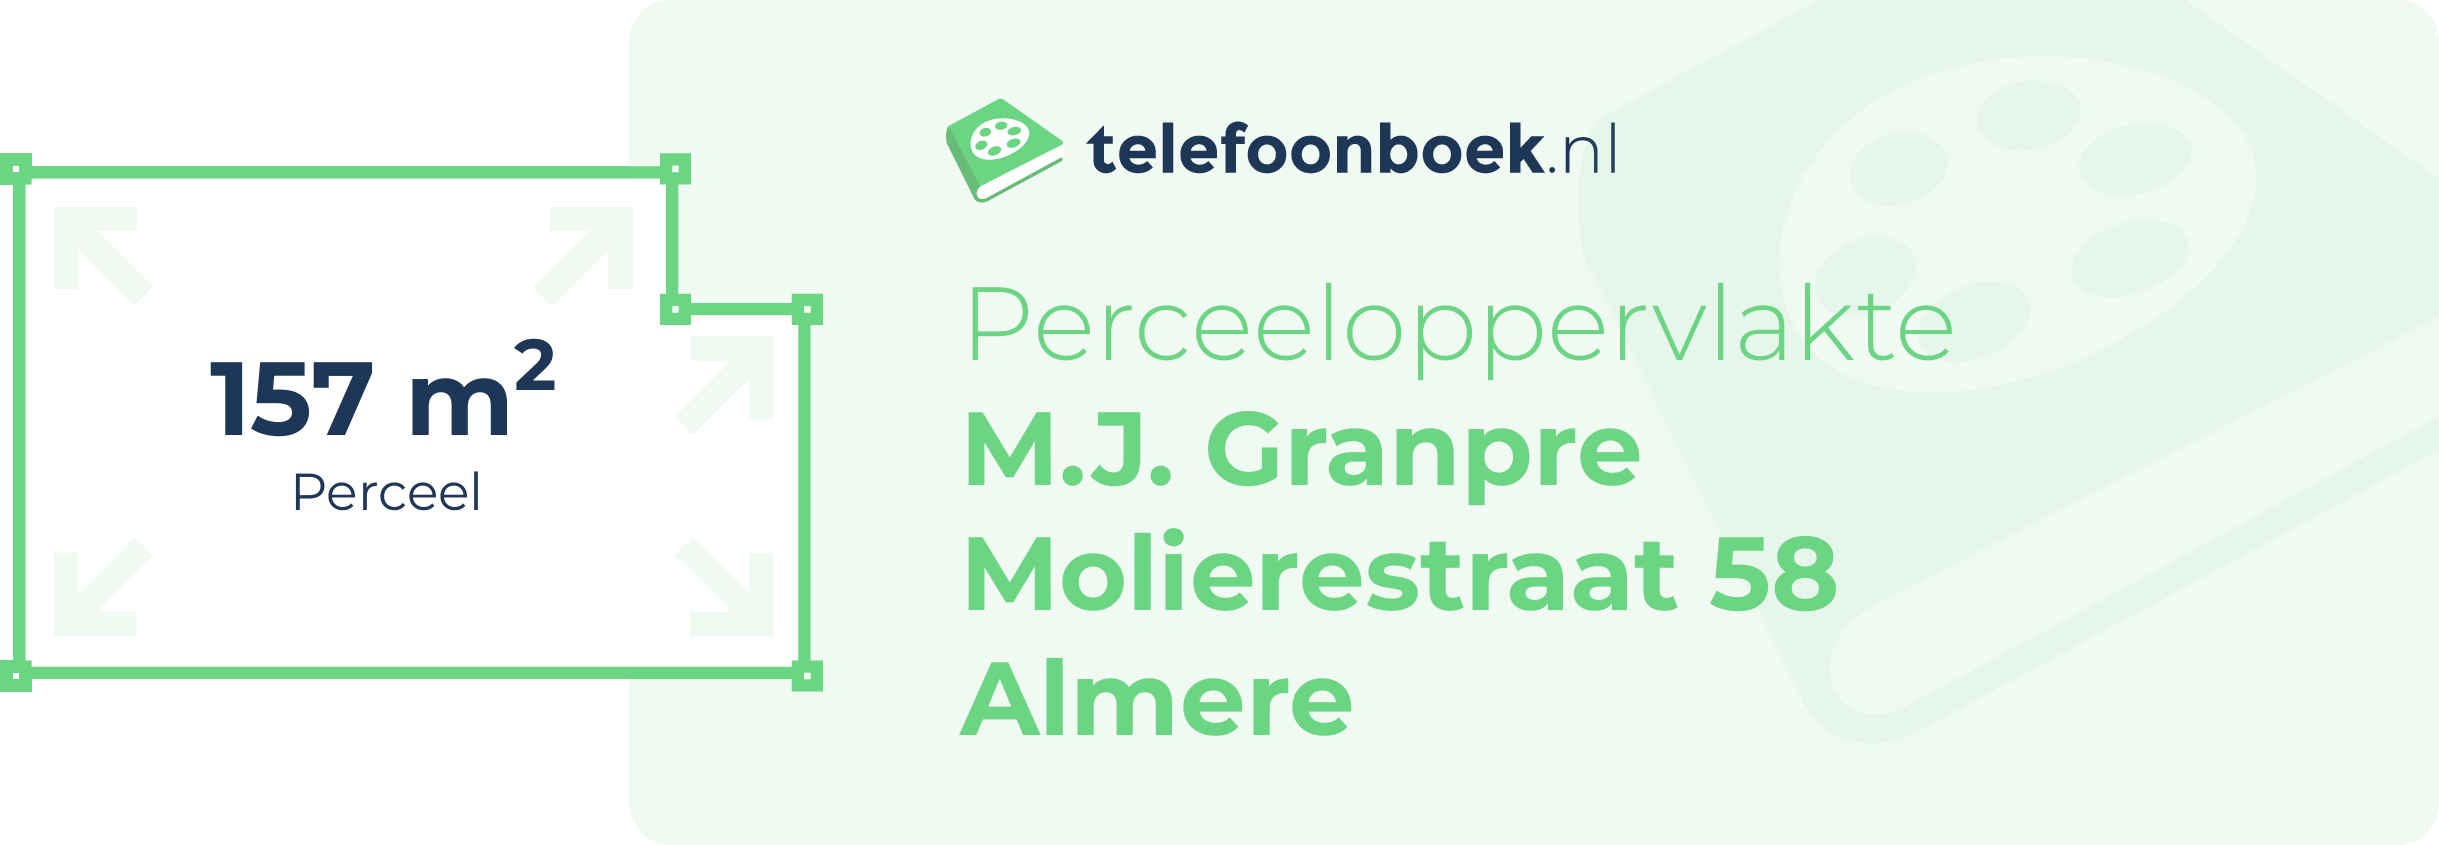 Perceeloppervlakte M.J. Granpre Molierestraat 58 Almere